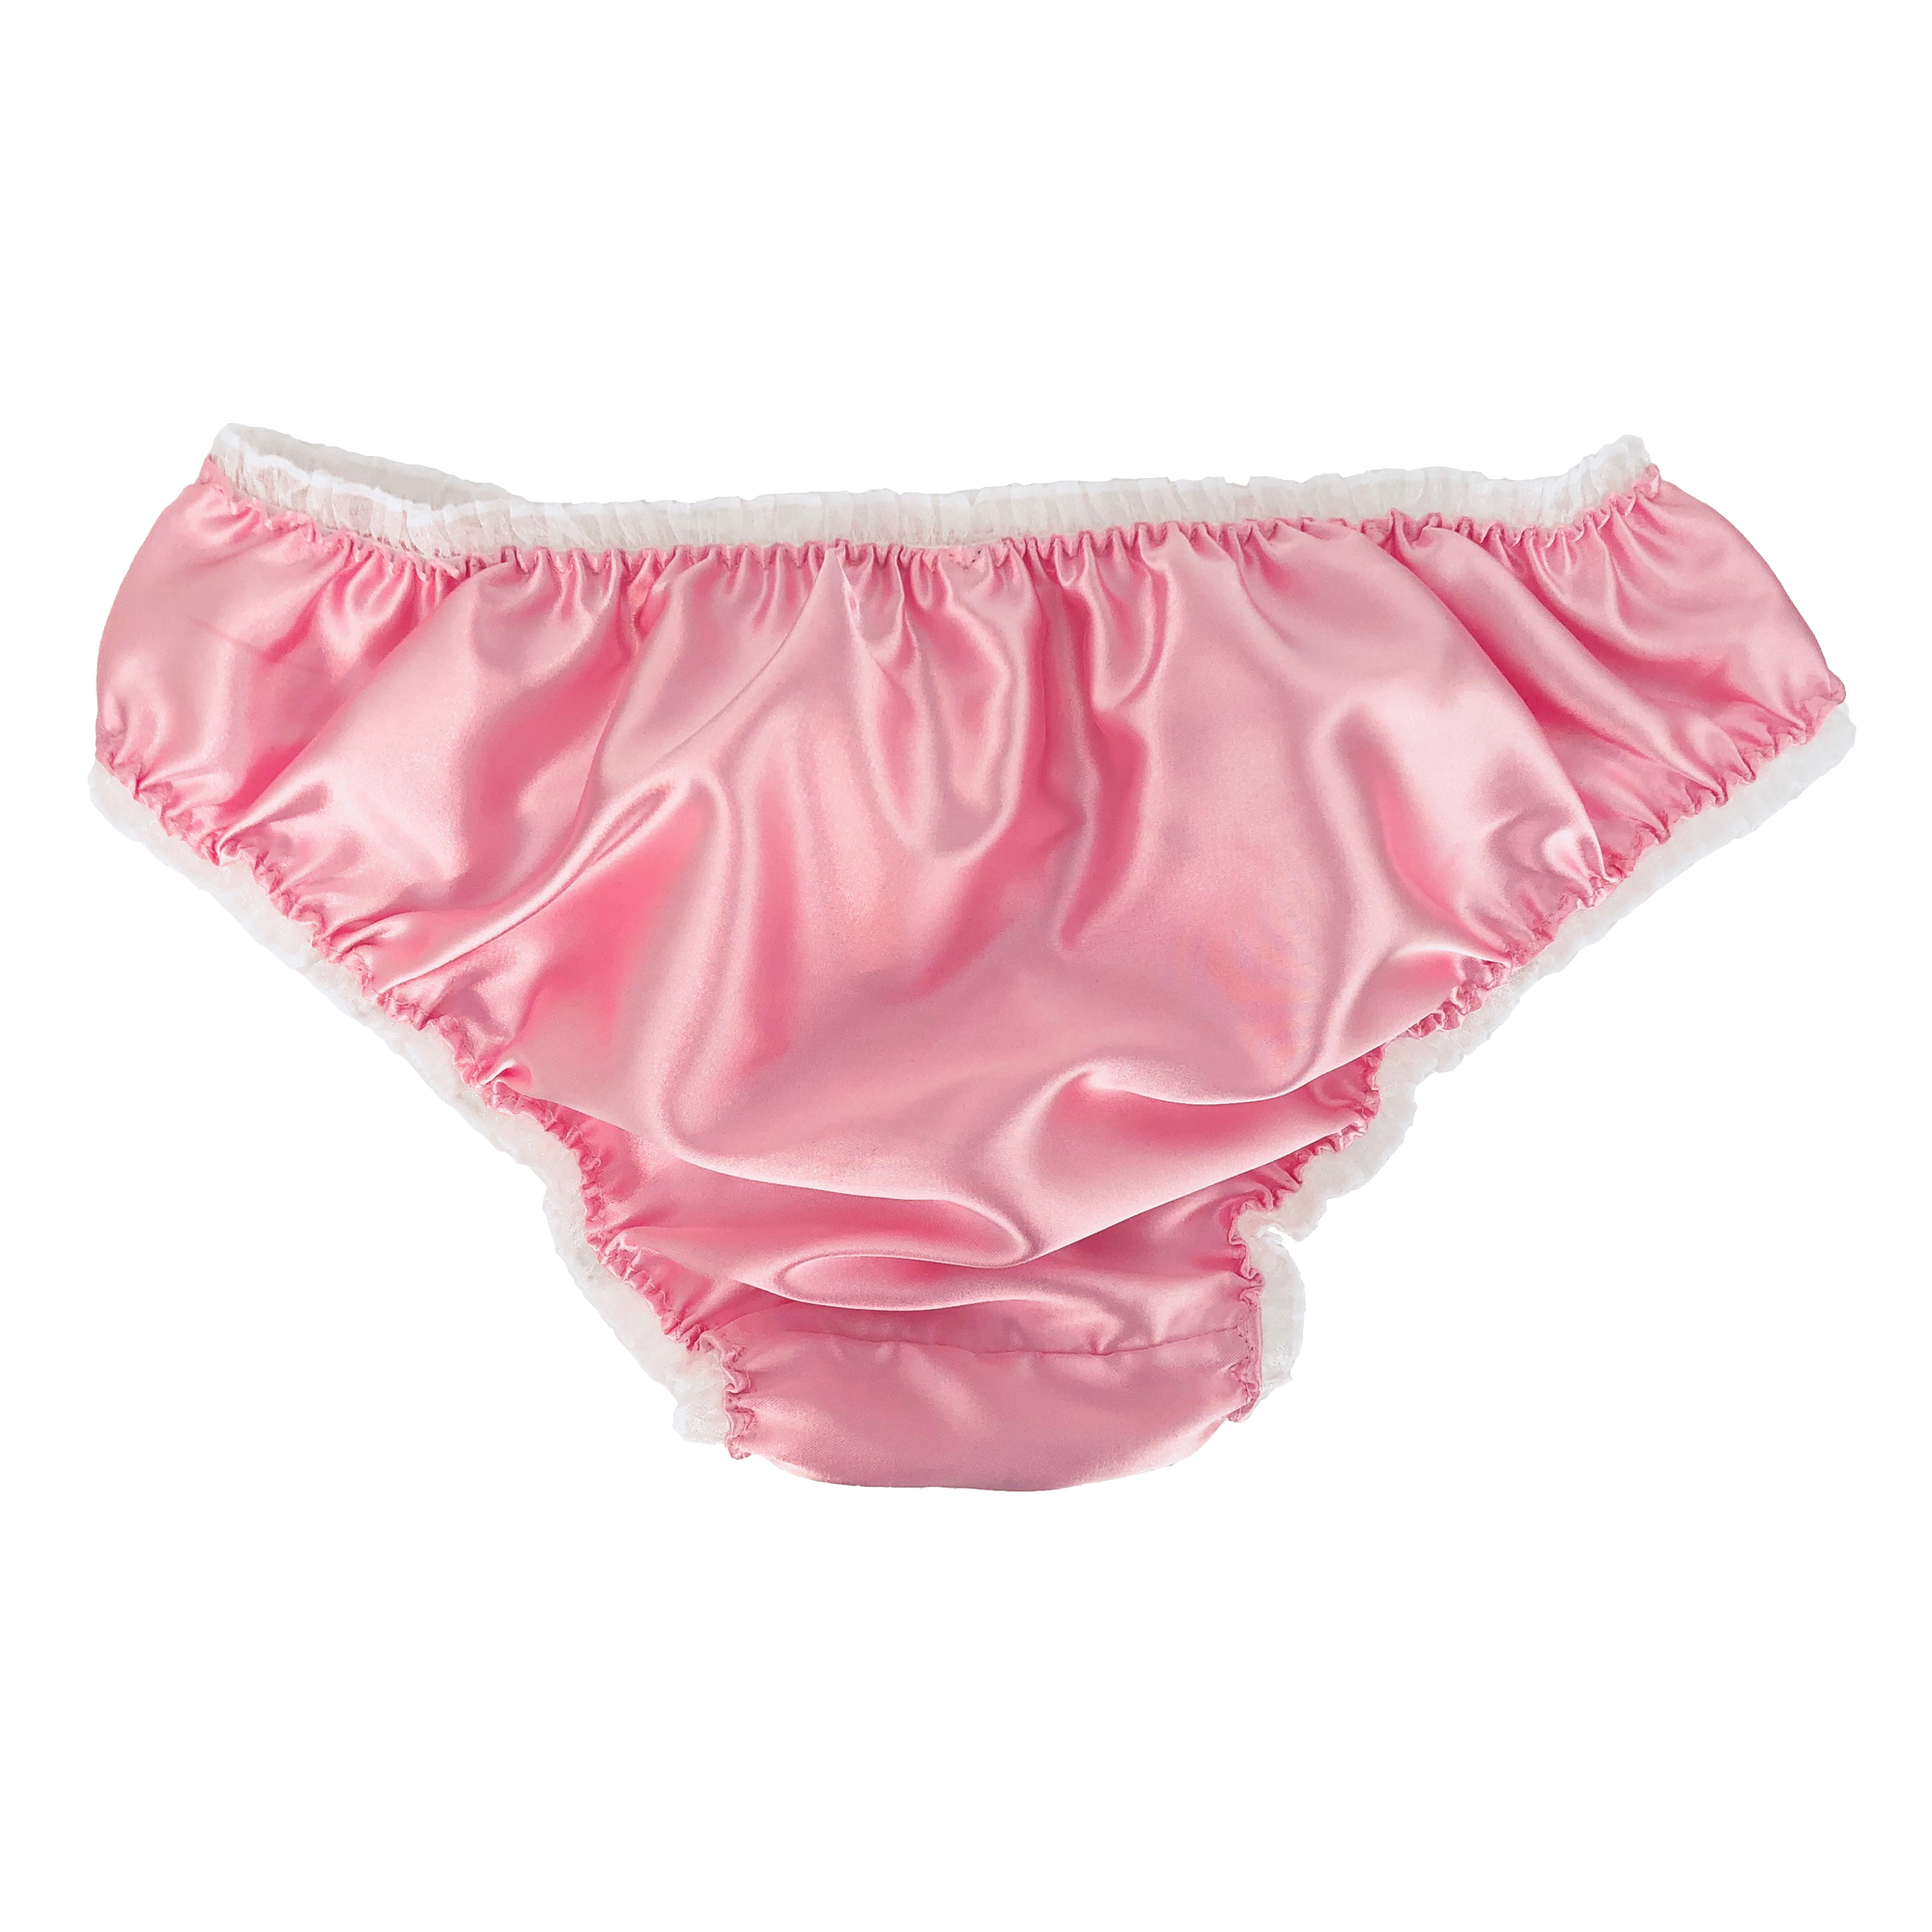 Baby Pink Satin Frilly Sissy Panties Bikini Knicker Underwear Briefs Size EBay